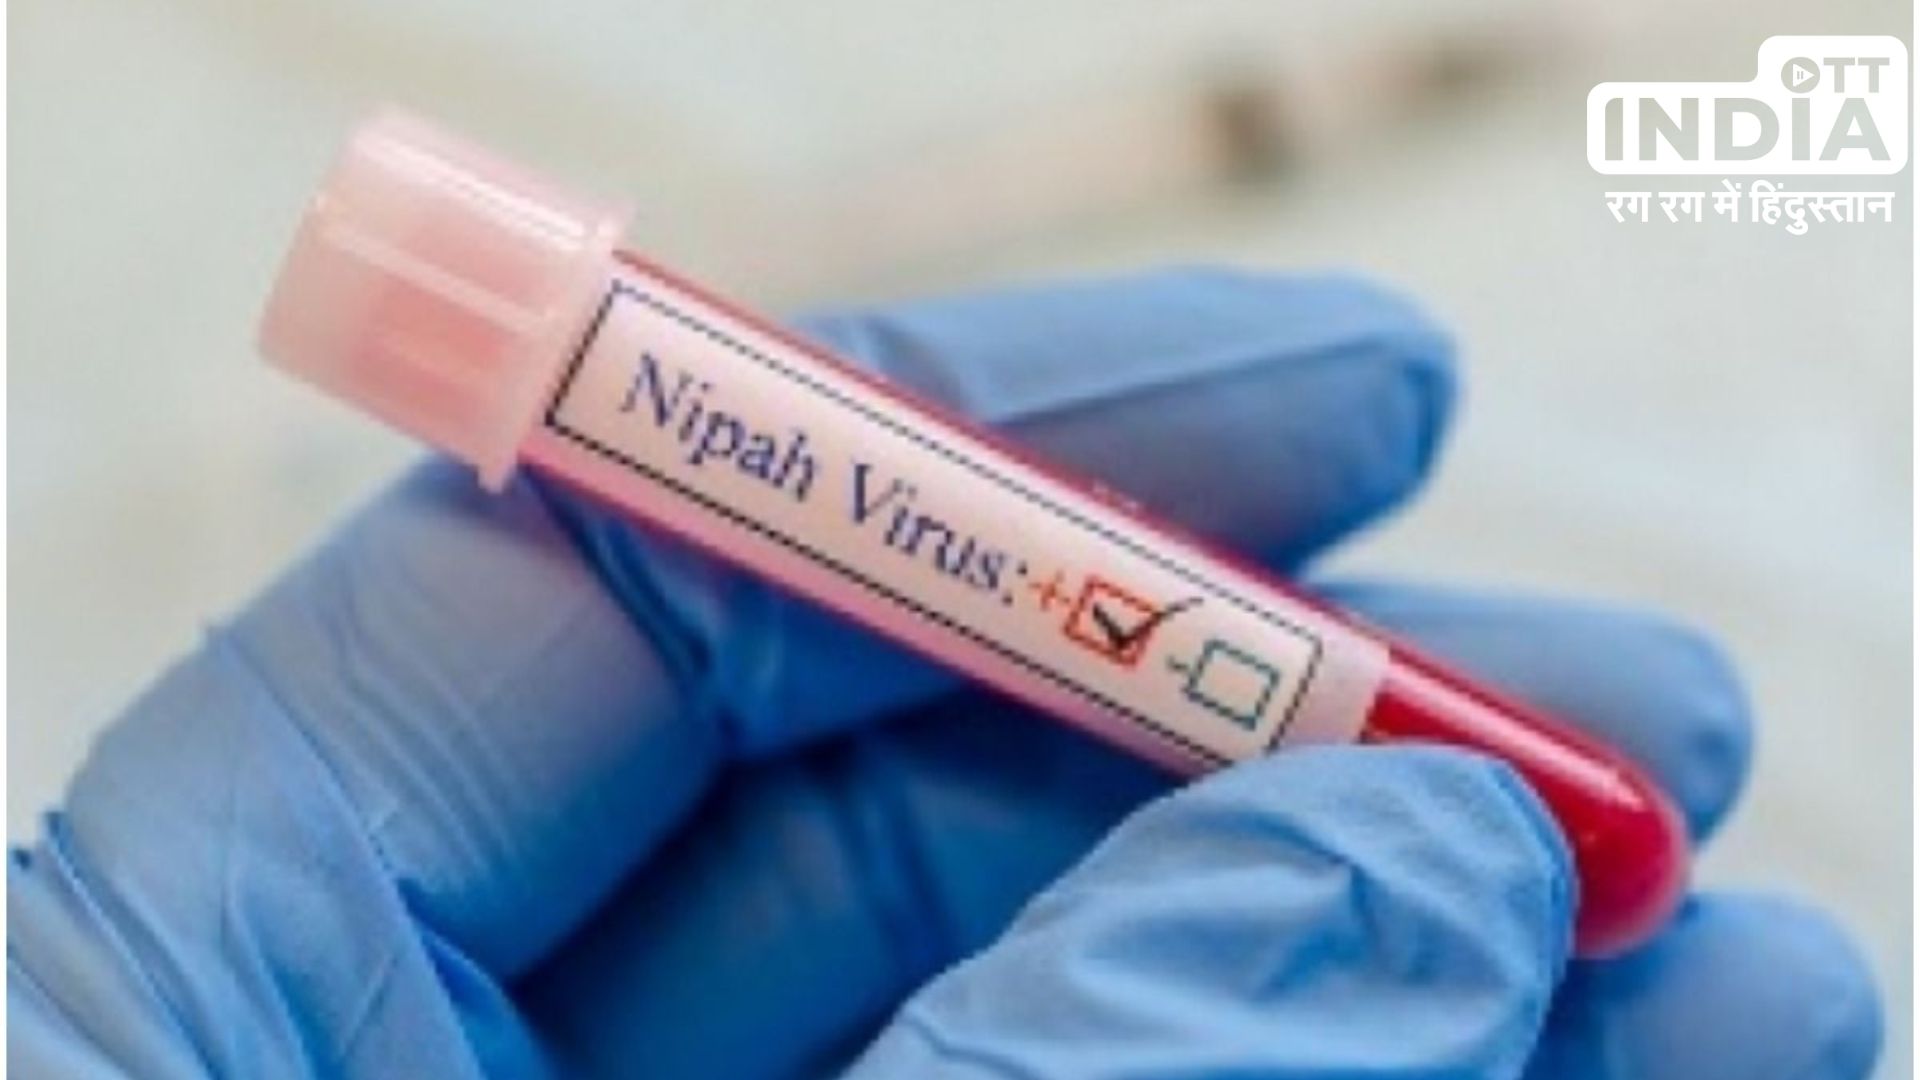 Nipah Virus : अचानक दो मौतों के बाद केरल सरकार हुई अलर्ट, निपाह वायरस की पुष्टि के लिए पुणे भेजे सैंपल..